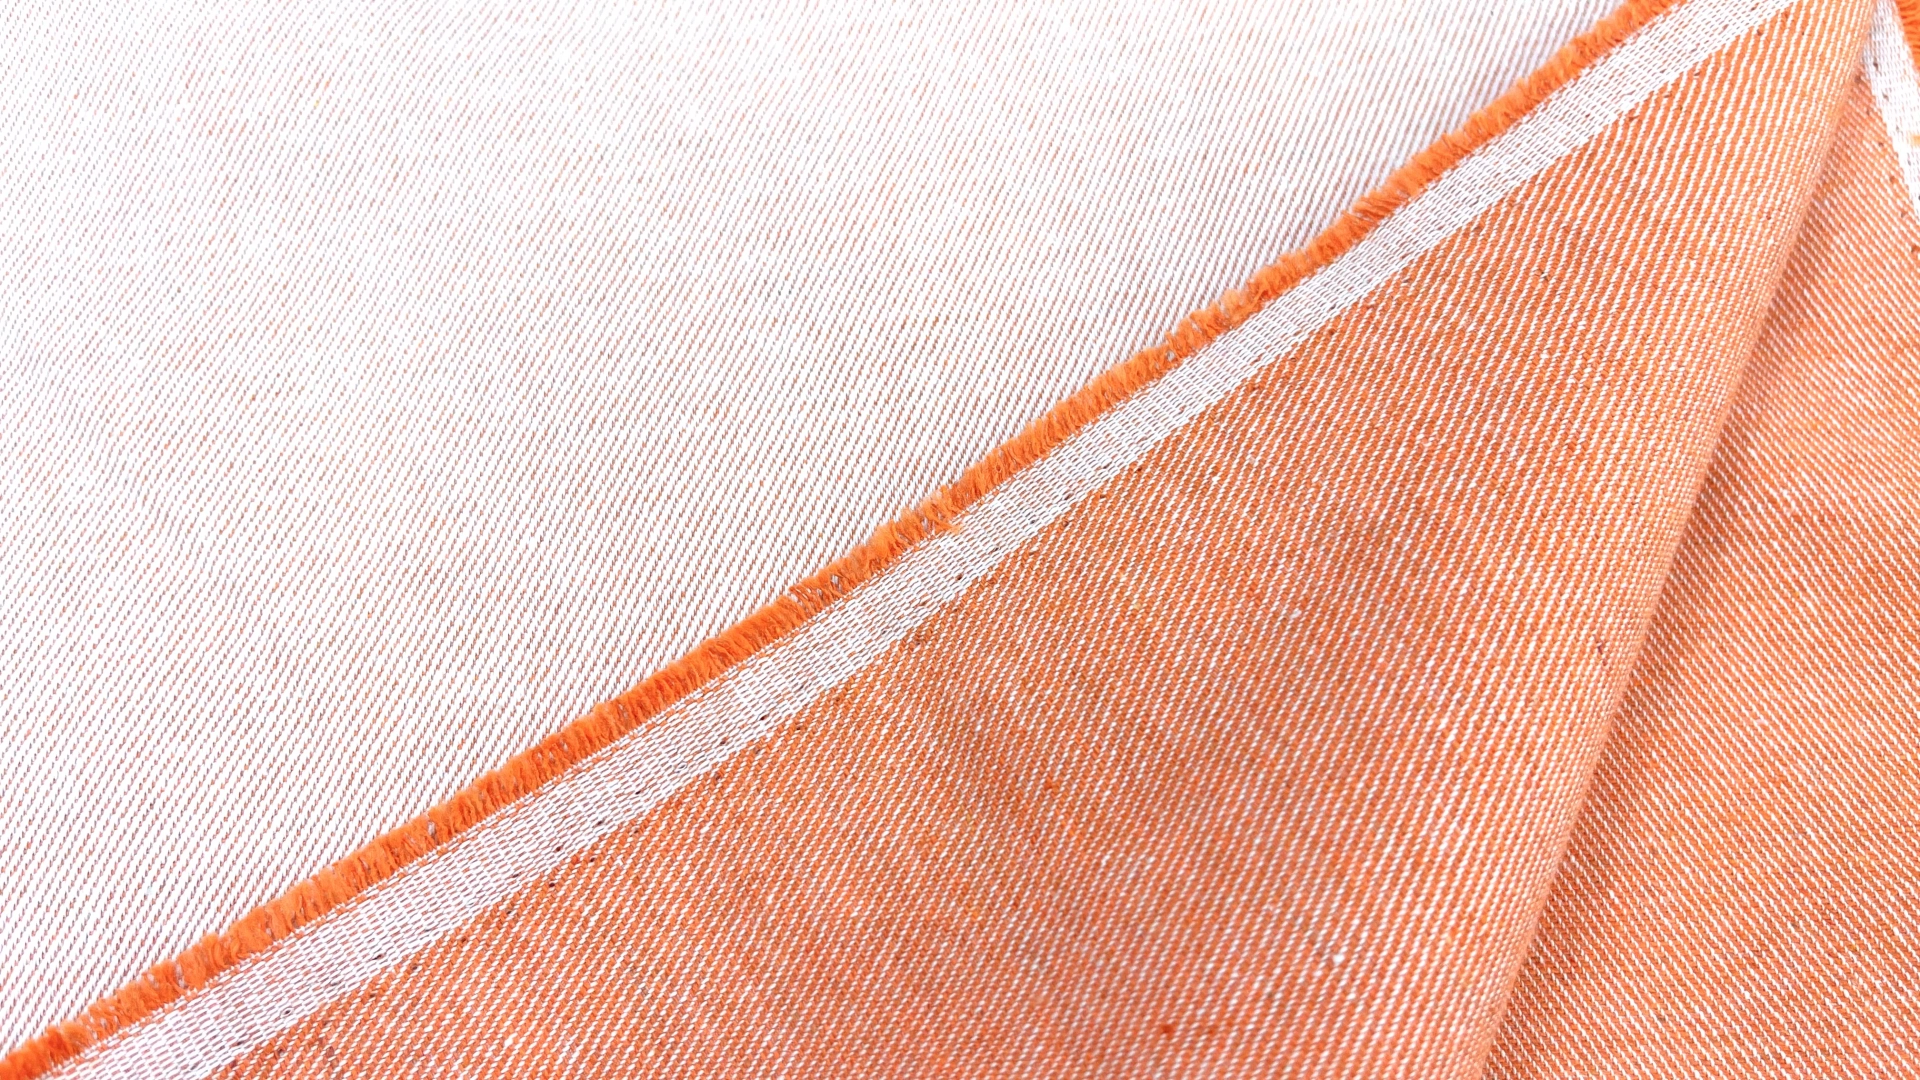 Двусторонний джинс с выраженным рубчиком оранжевого цвета. Подойдет для пошива летних джинс, куртки или юбки.